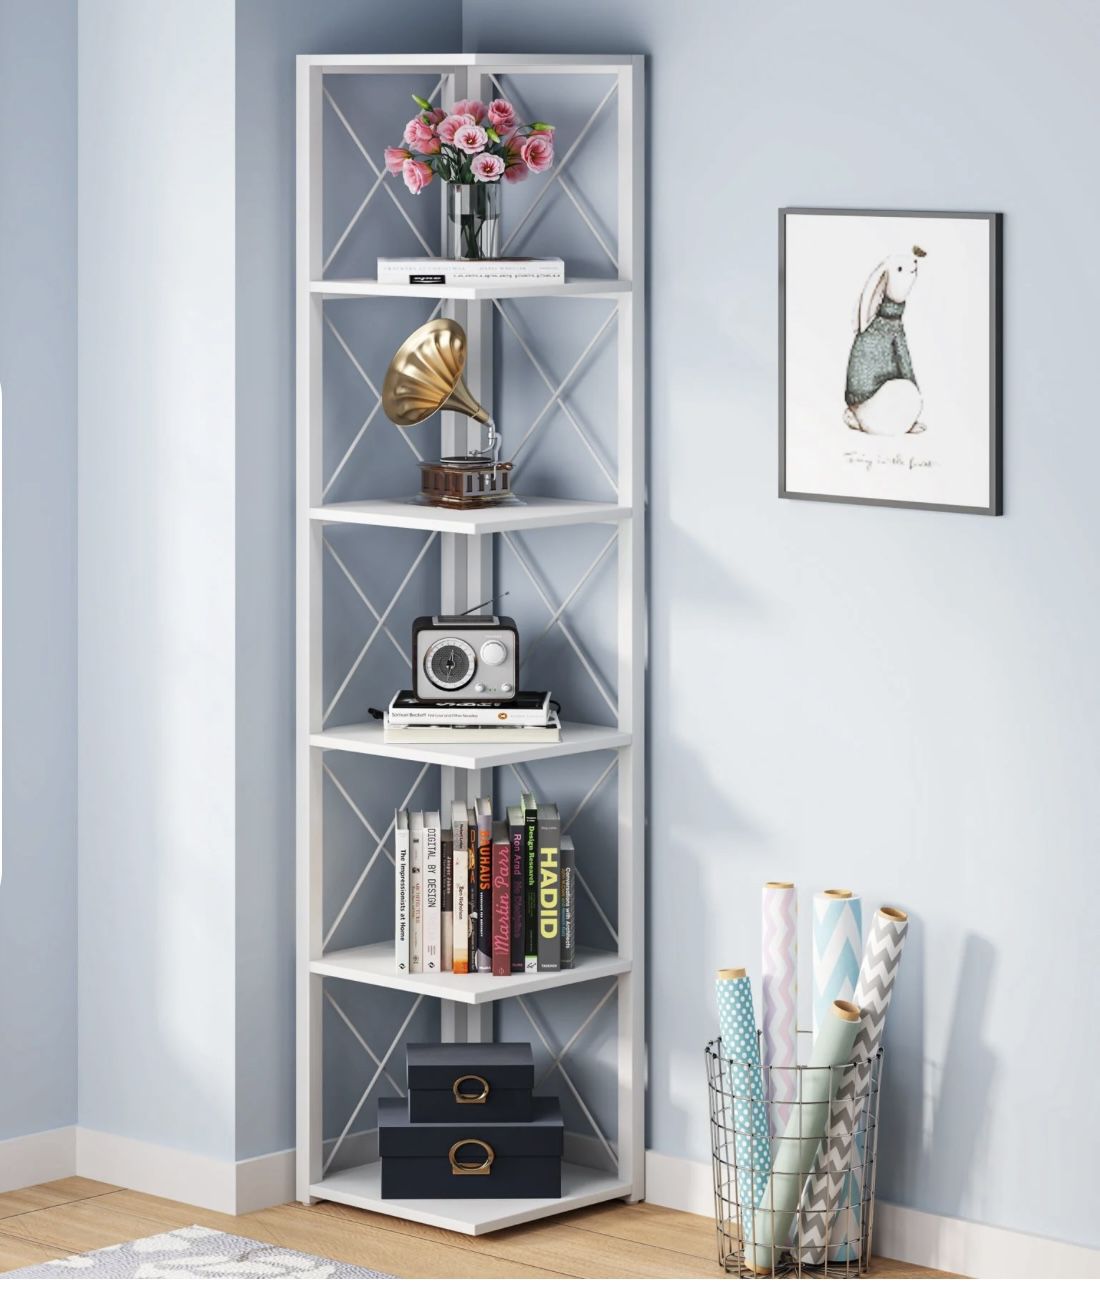 F1851 6-Tier Corner Shelf, 70.86" Corner Bookshelf Storage Etagere Bookcase